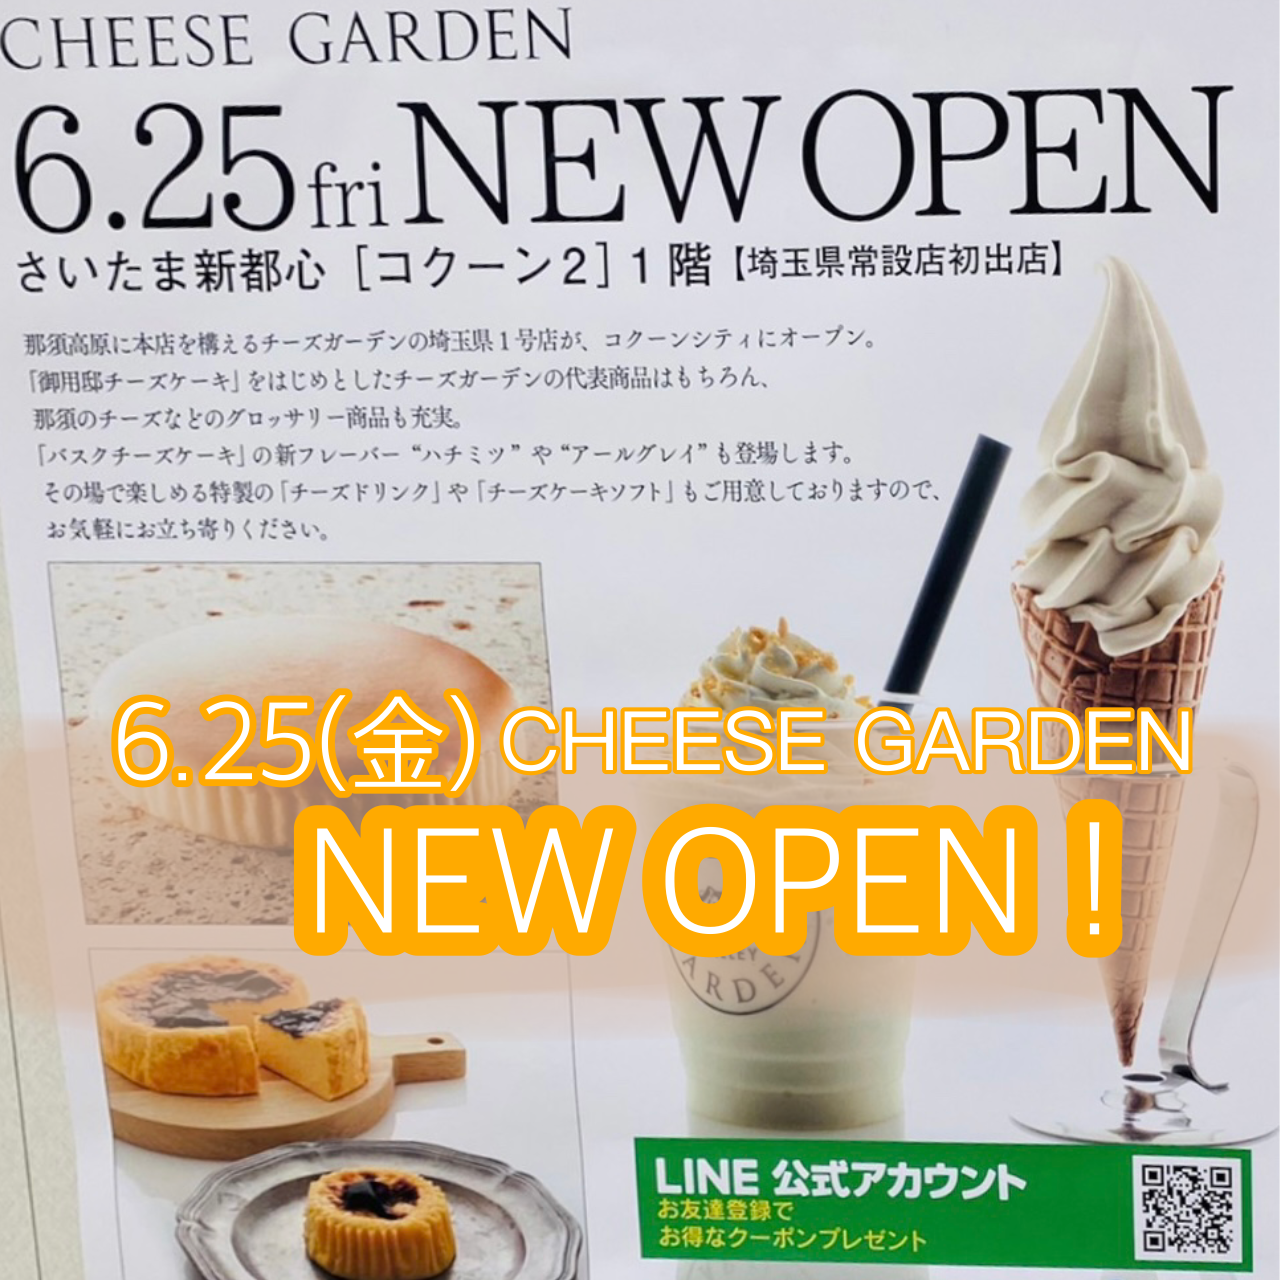 埼玉県初の常設店舗『チーズガーデン コクーン店』が2021年6月25日(金)にオープン！